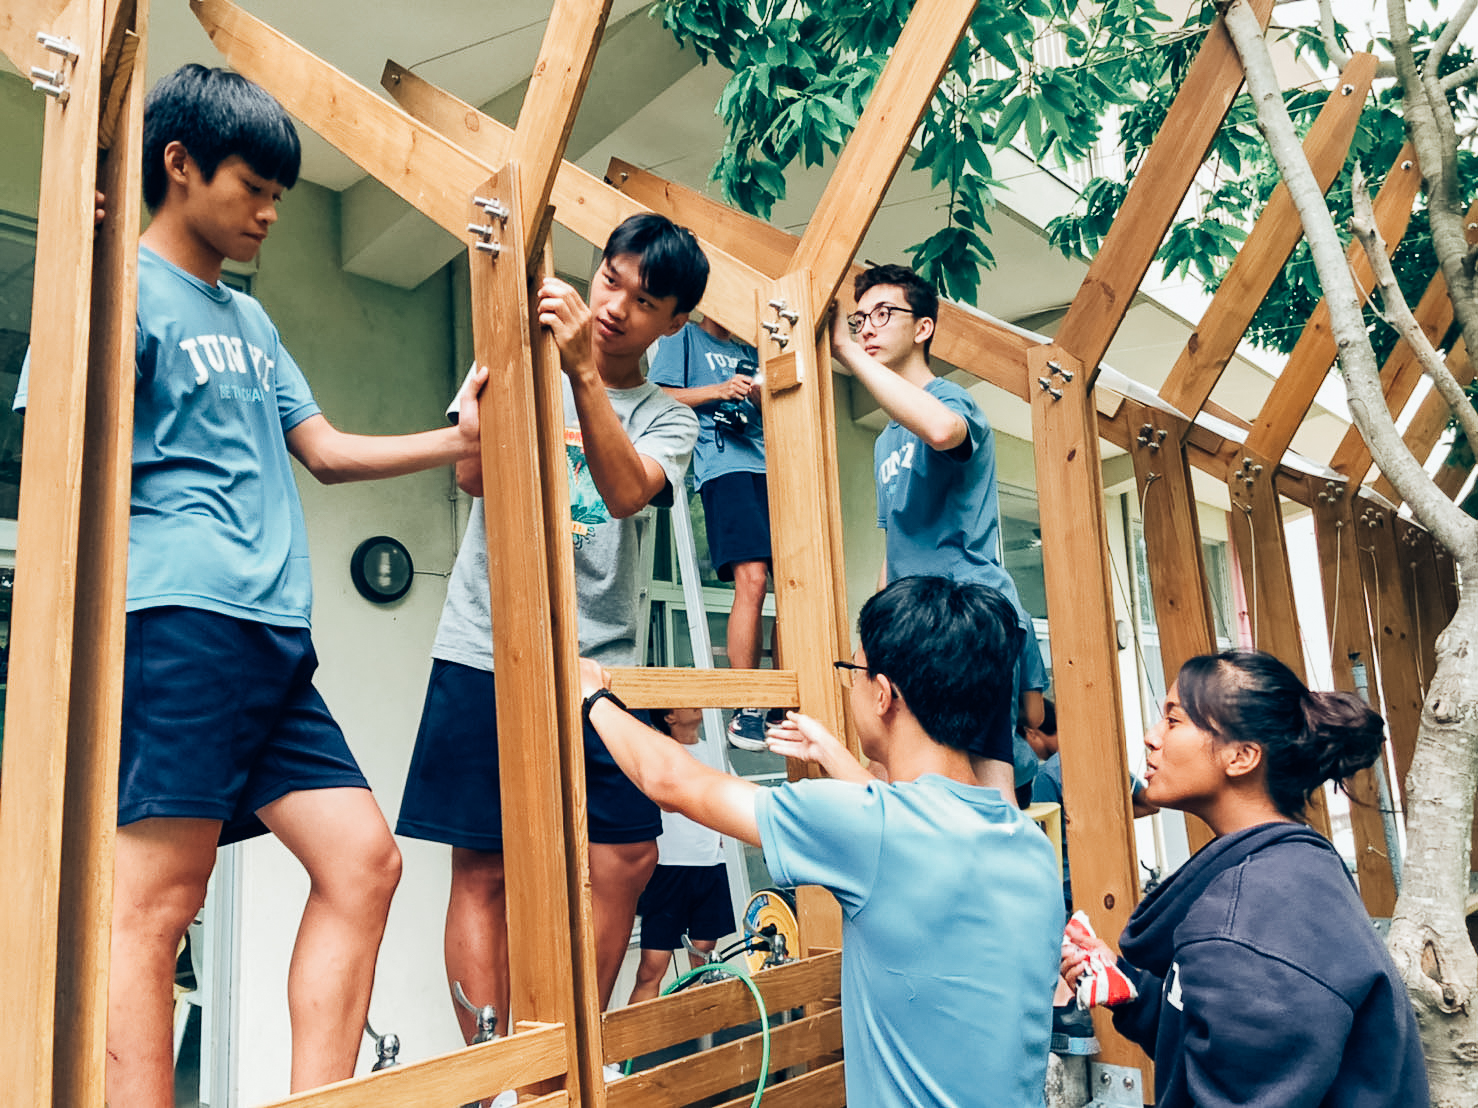 均一國際實驗教育學校在綠能建築課程實作遮雨棚